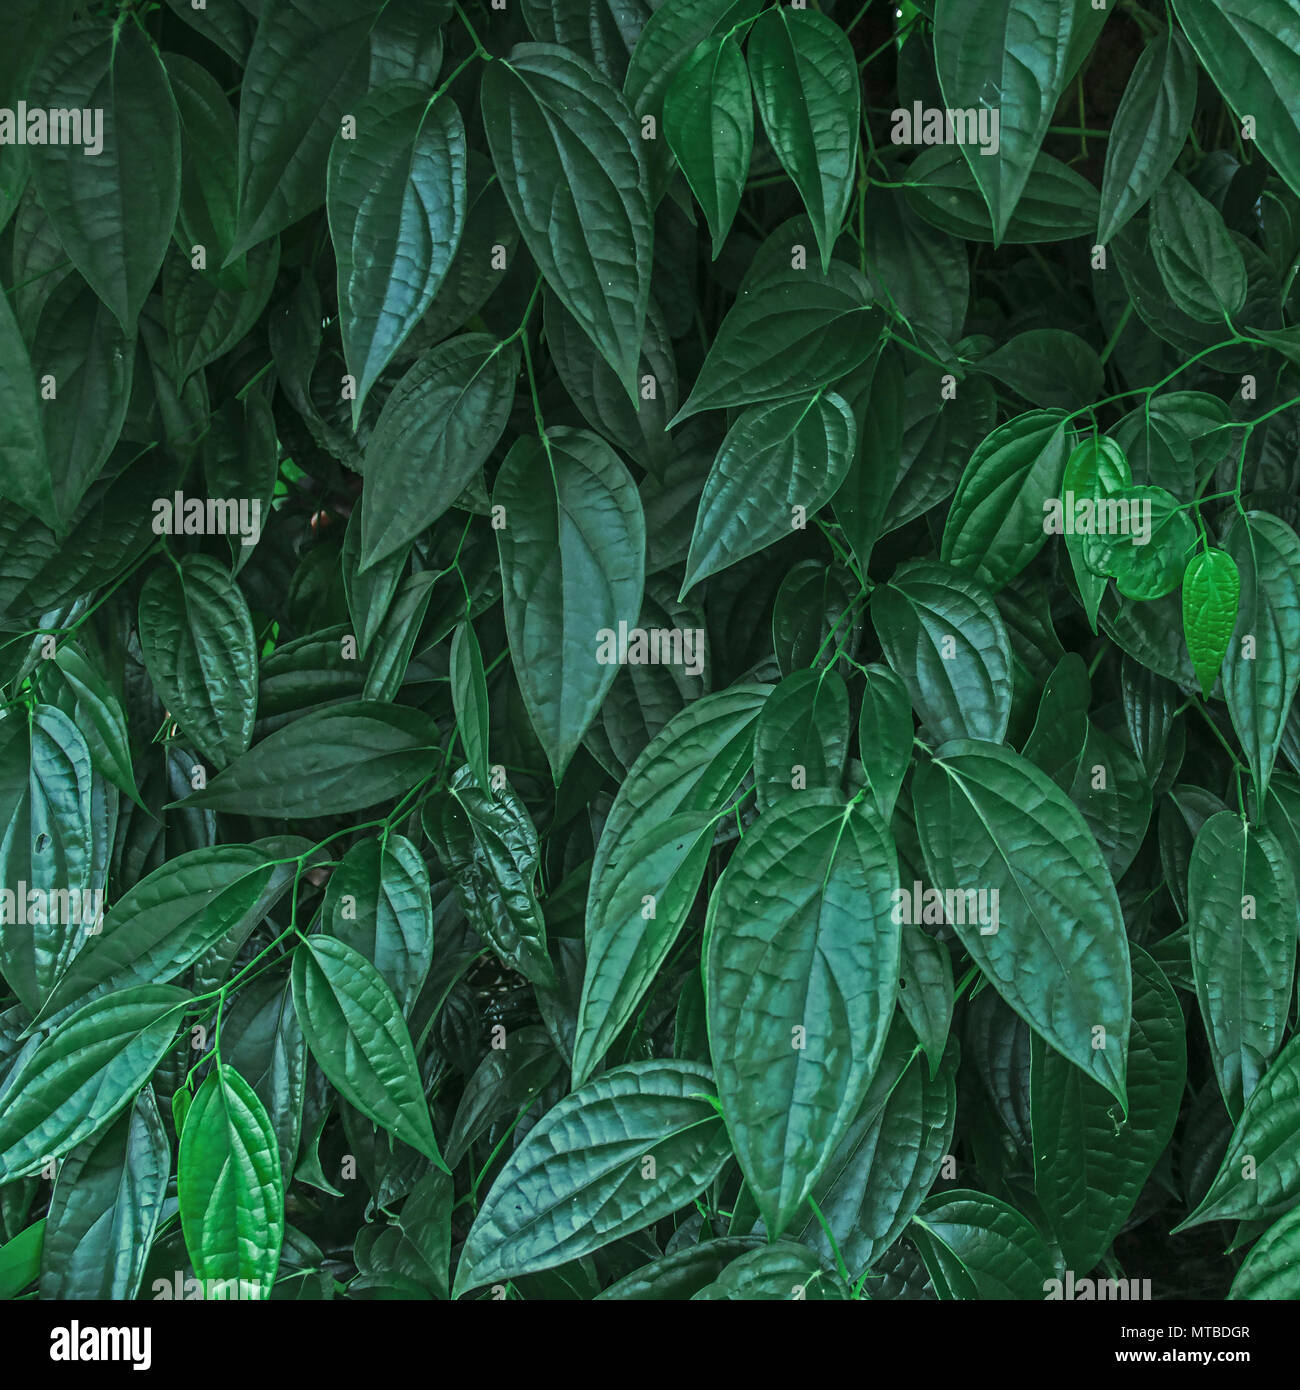 Hojas de color verde oscuro y el fondo de hojas verdes, cerca de hoja verde oscura, de un grupo de hojas Foto de stock